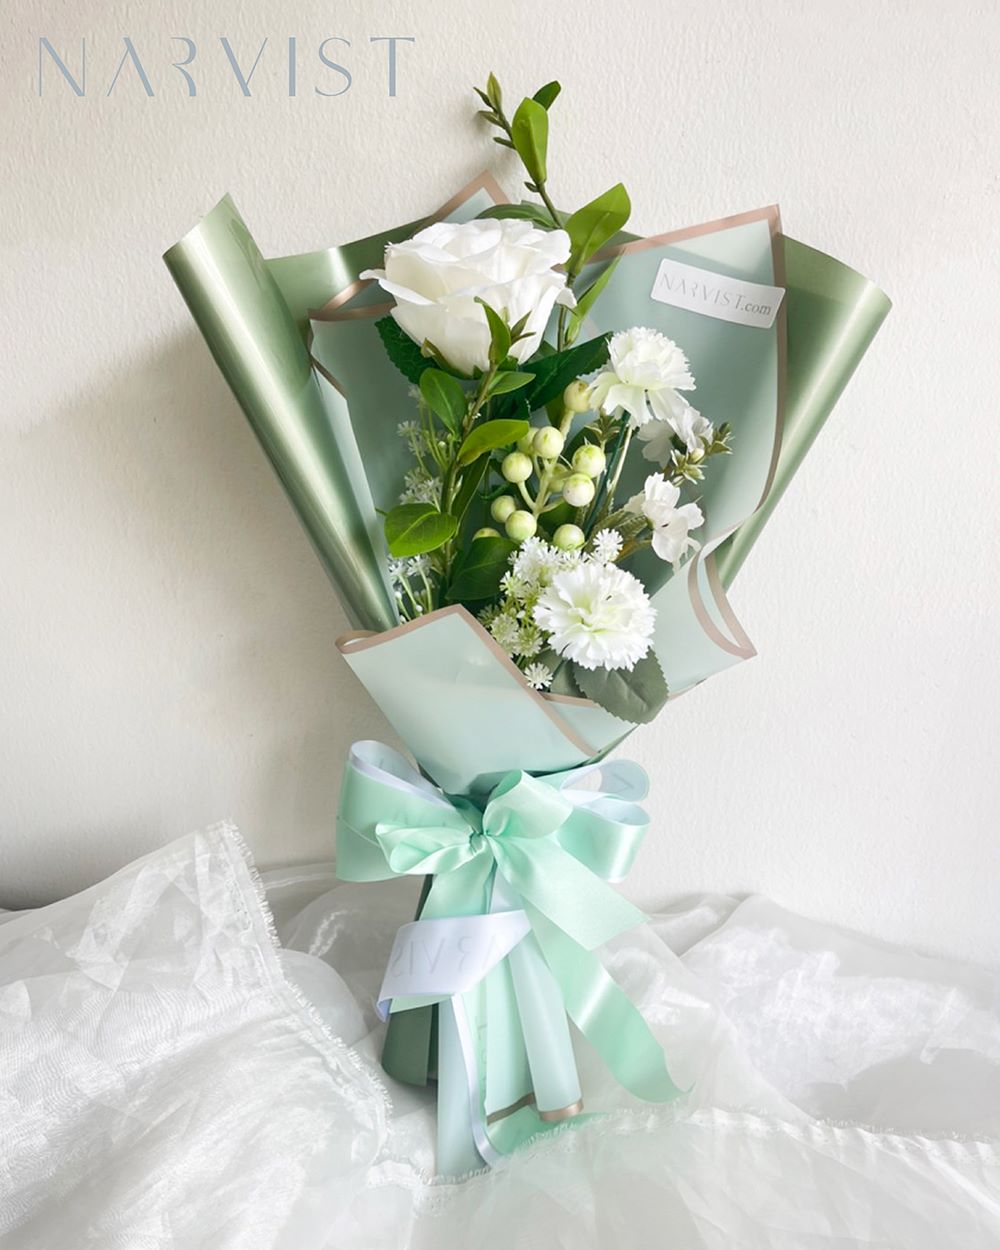 BQ15 ดอกไม้ประดิษฐ์ ช่อกระดาษเขียว กุหลาบขาว คาร์เนชั่นขาว โบว์ขาวเขียว